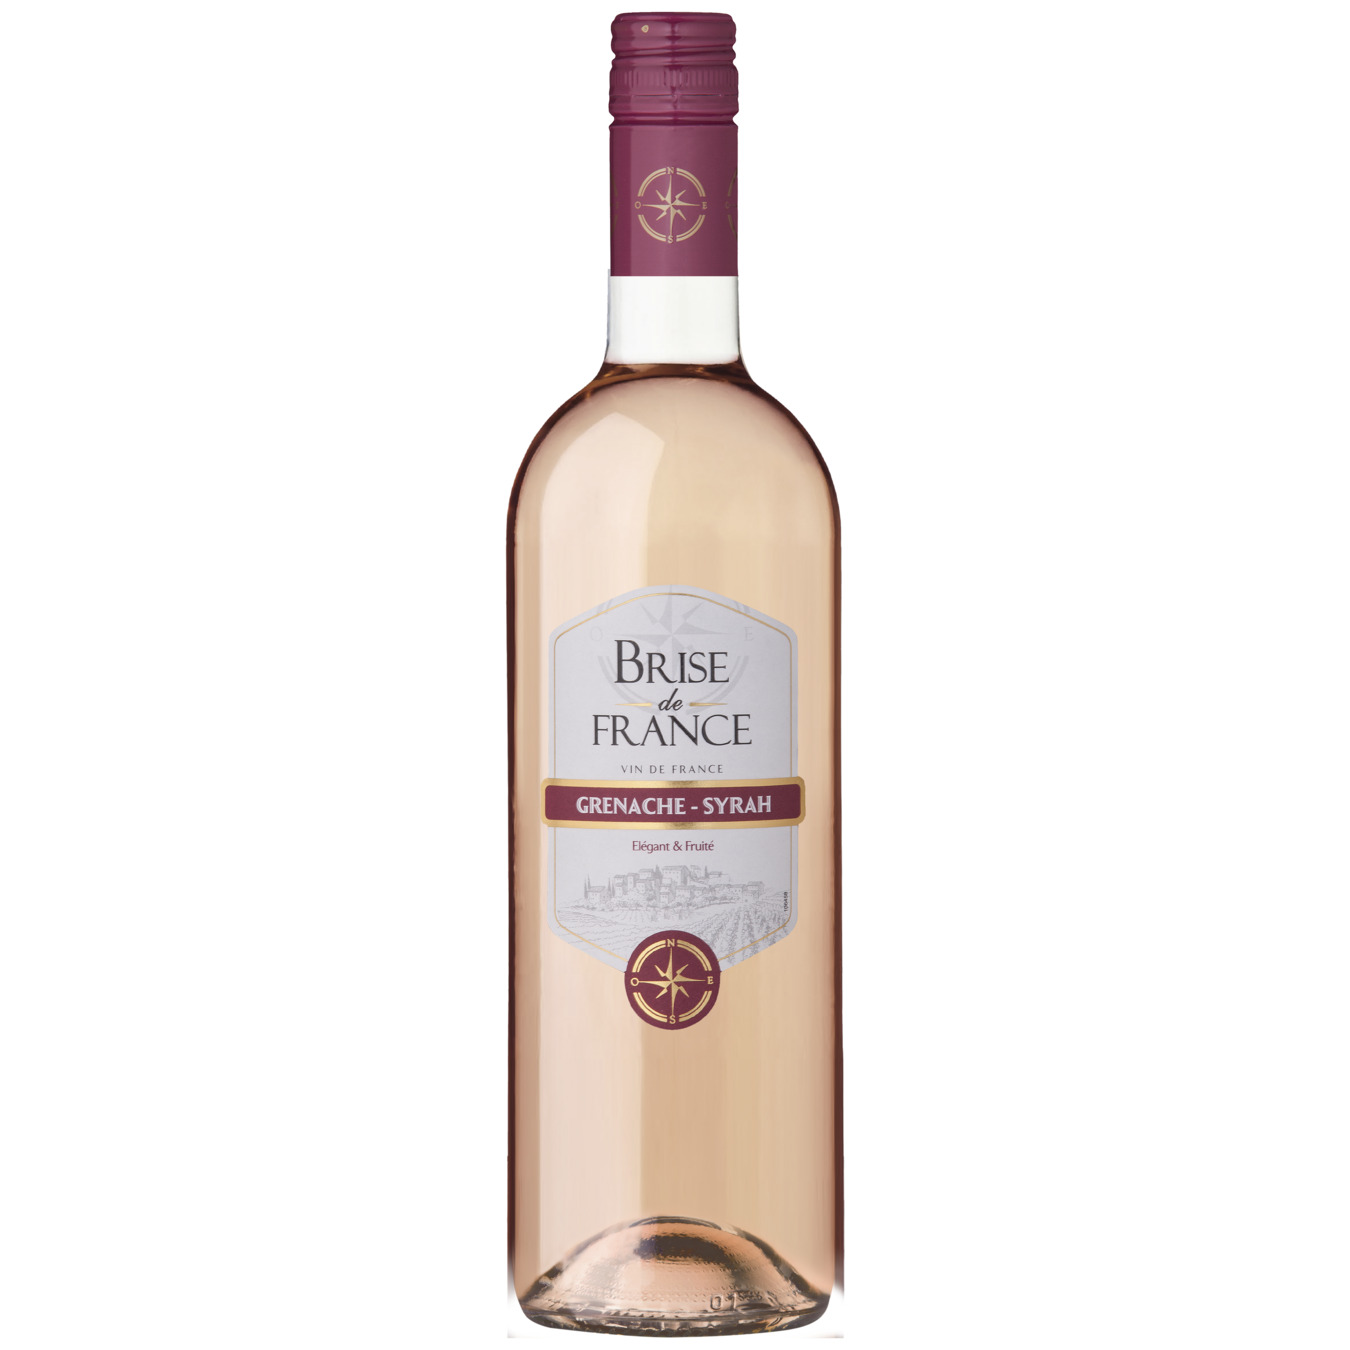 Brise de France Grenache-Syrah pink dry wine 12.5% 0.75l